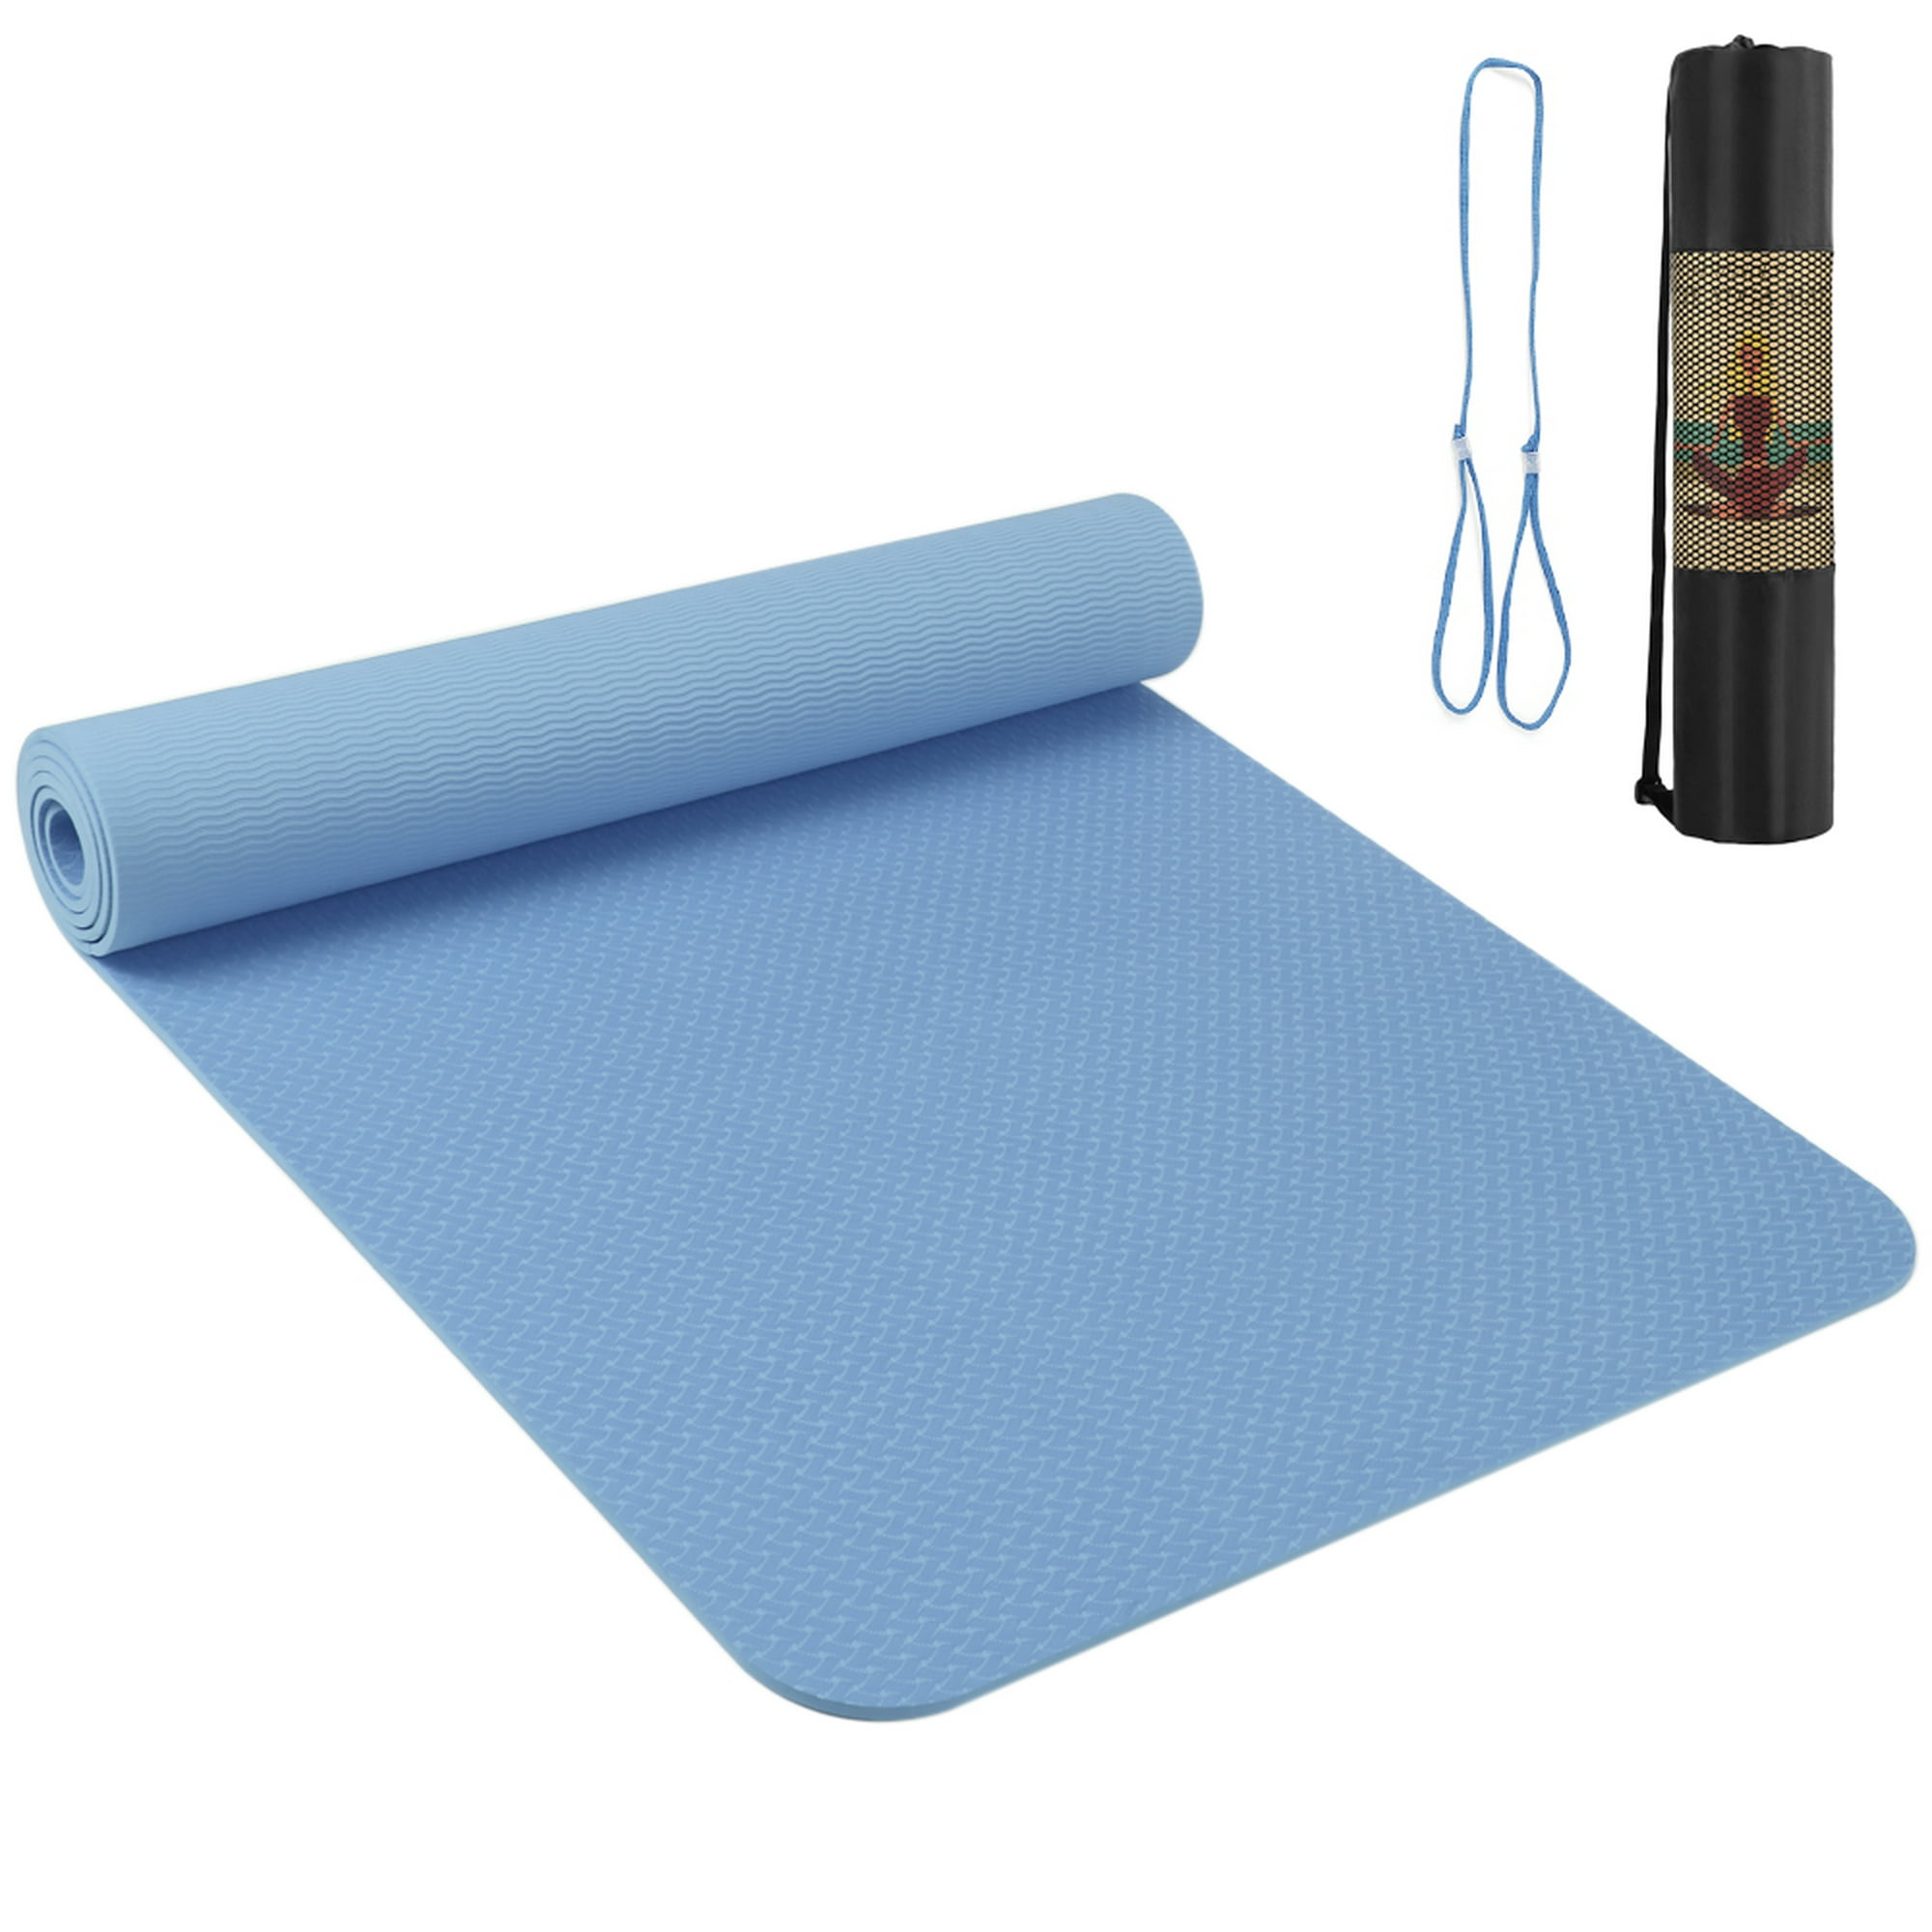 Gruesa esterilla de yoga Fitness Exercise Mat de alta densidad de